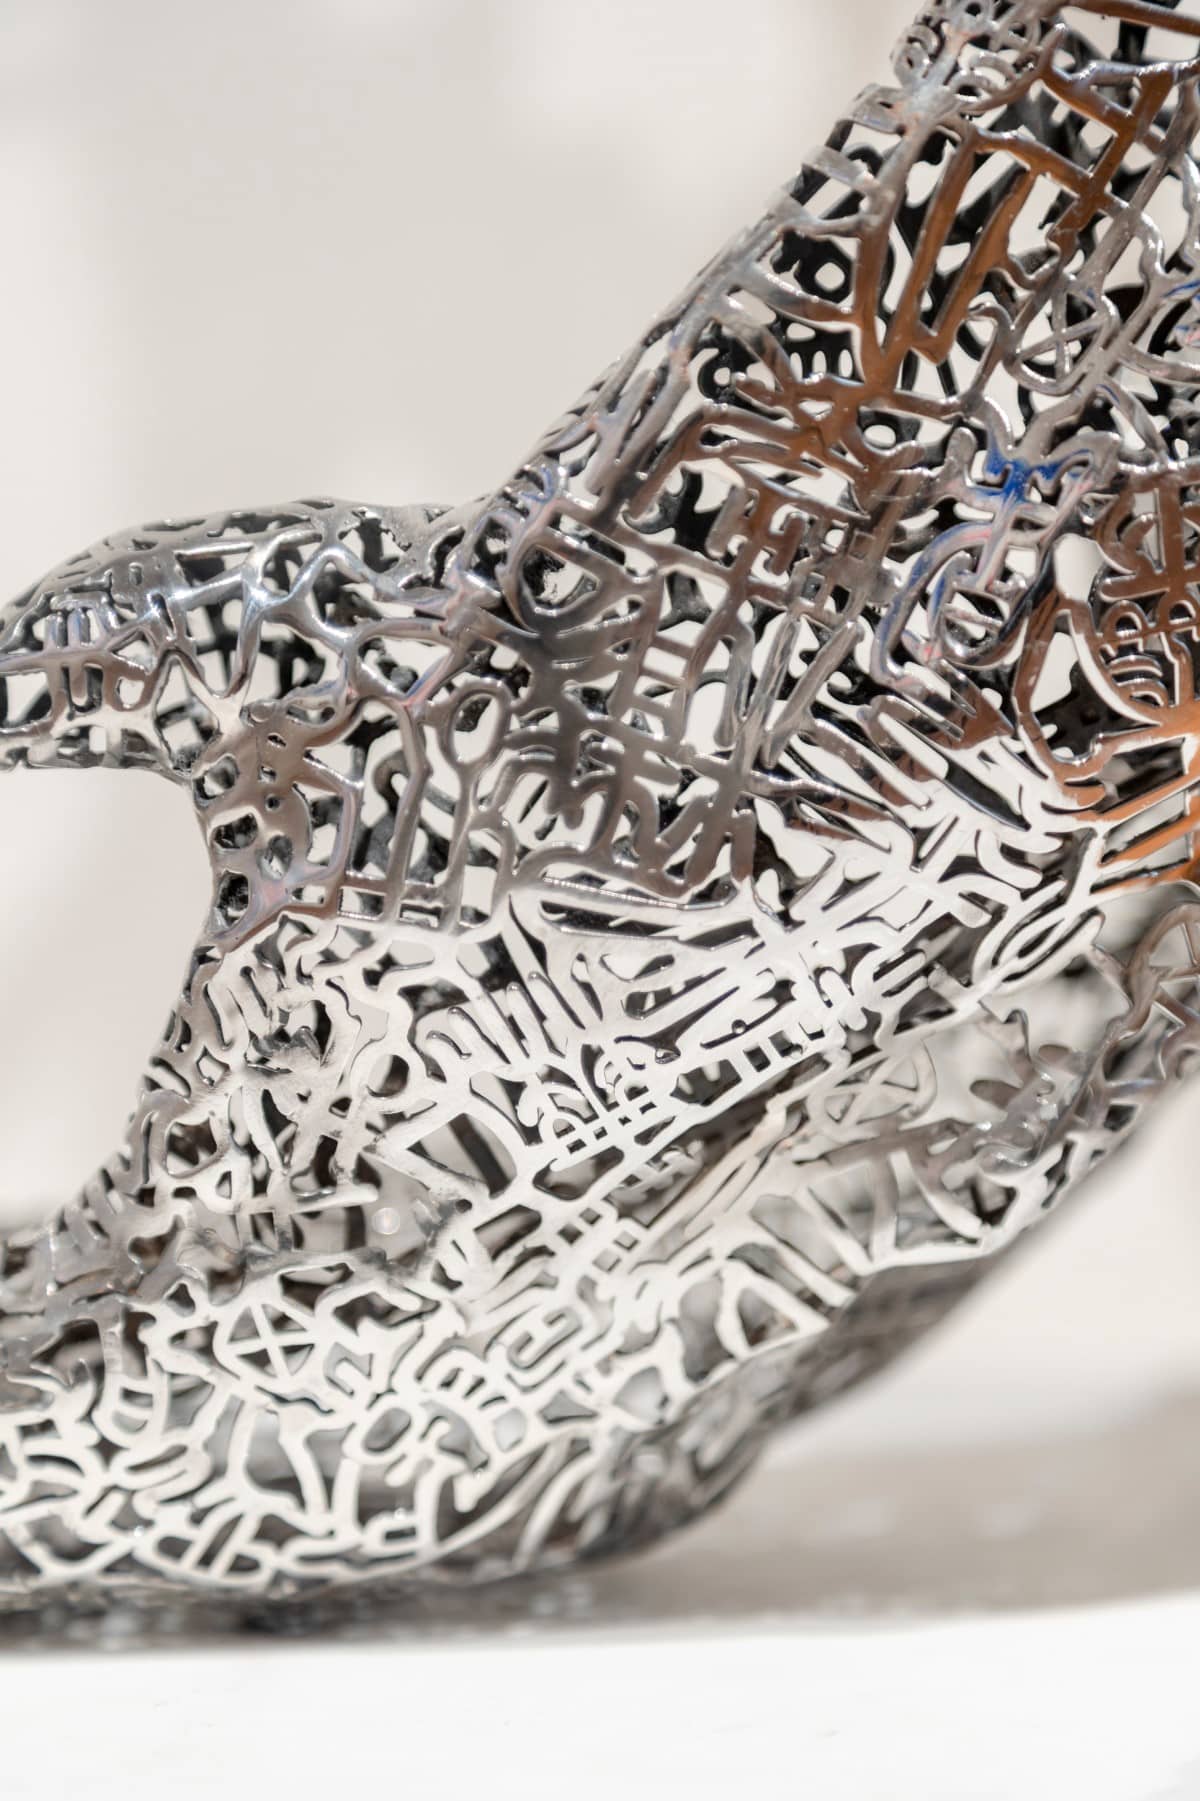 Detail of steel sculpture by Zheng Lu